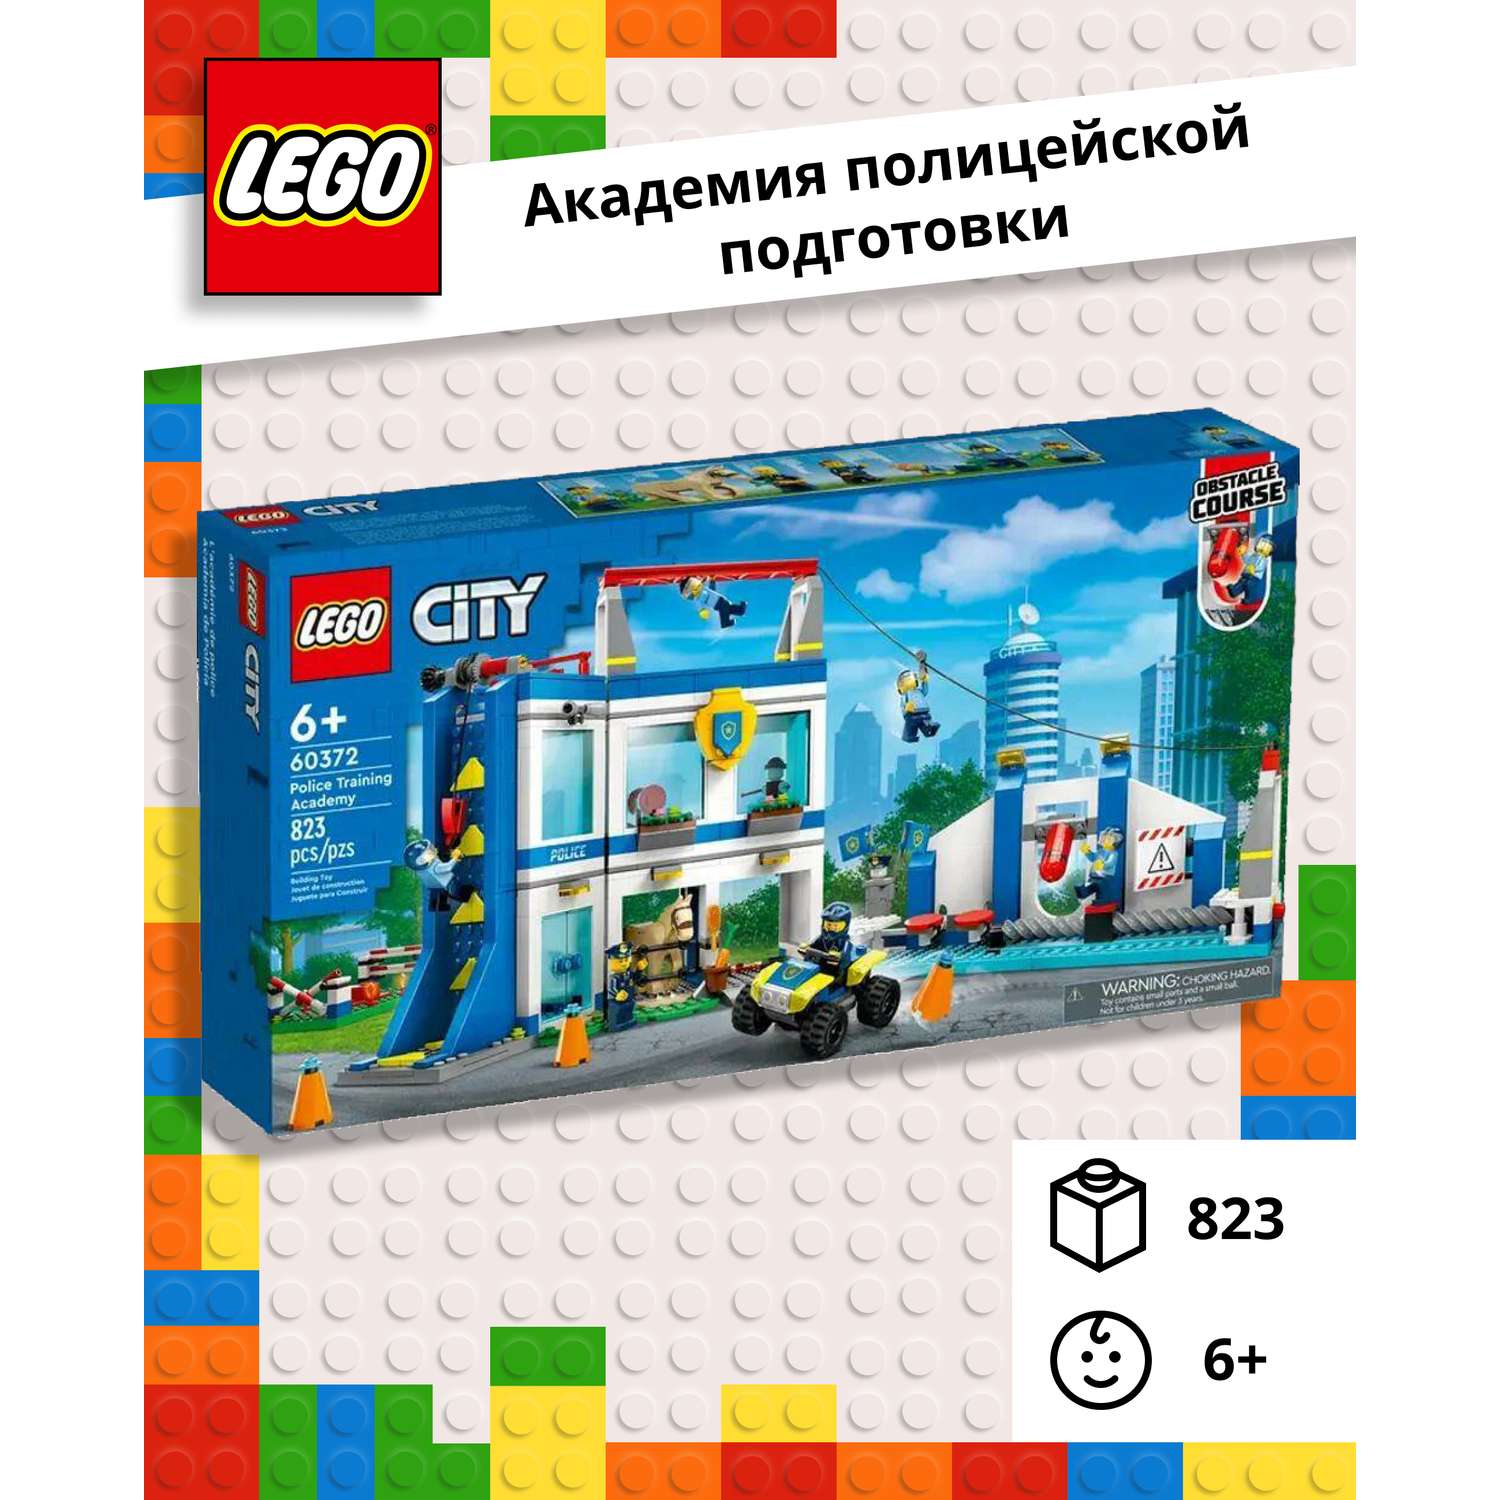 Конструктор LEGO City Police «Академия полицейской подготовки» 823 детали 60372 - фото 1